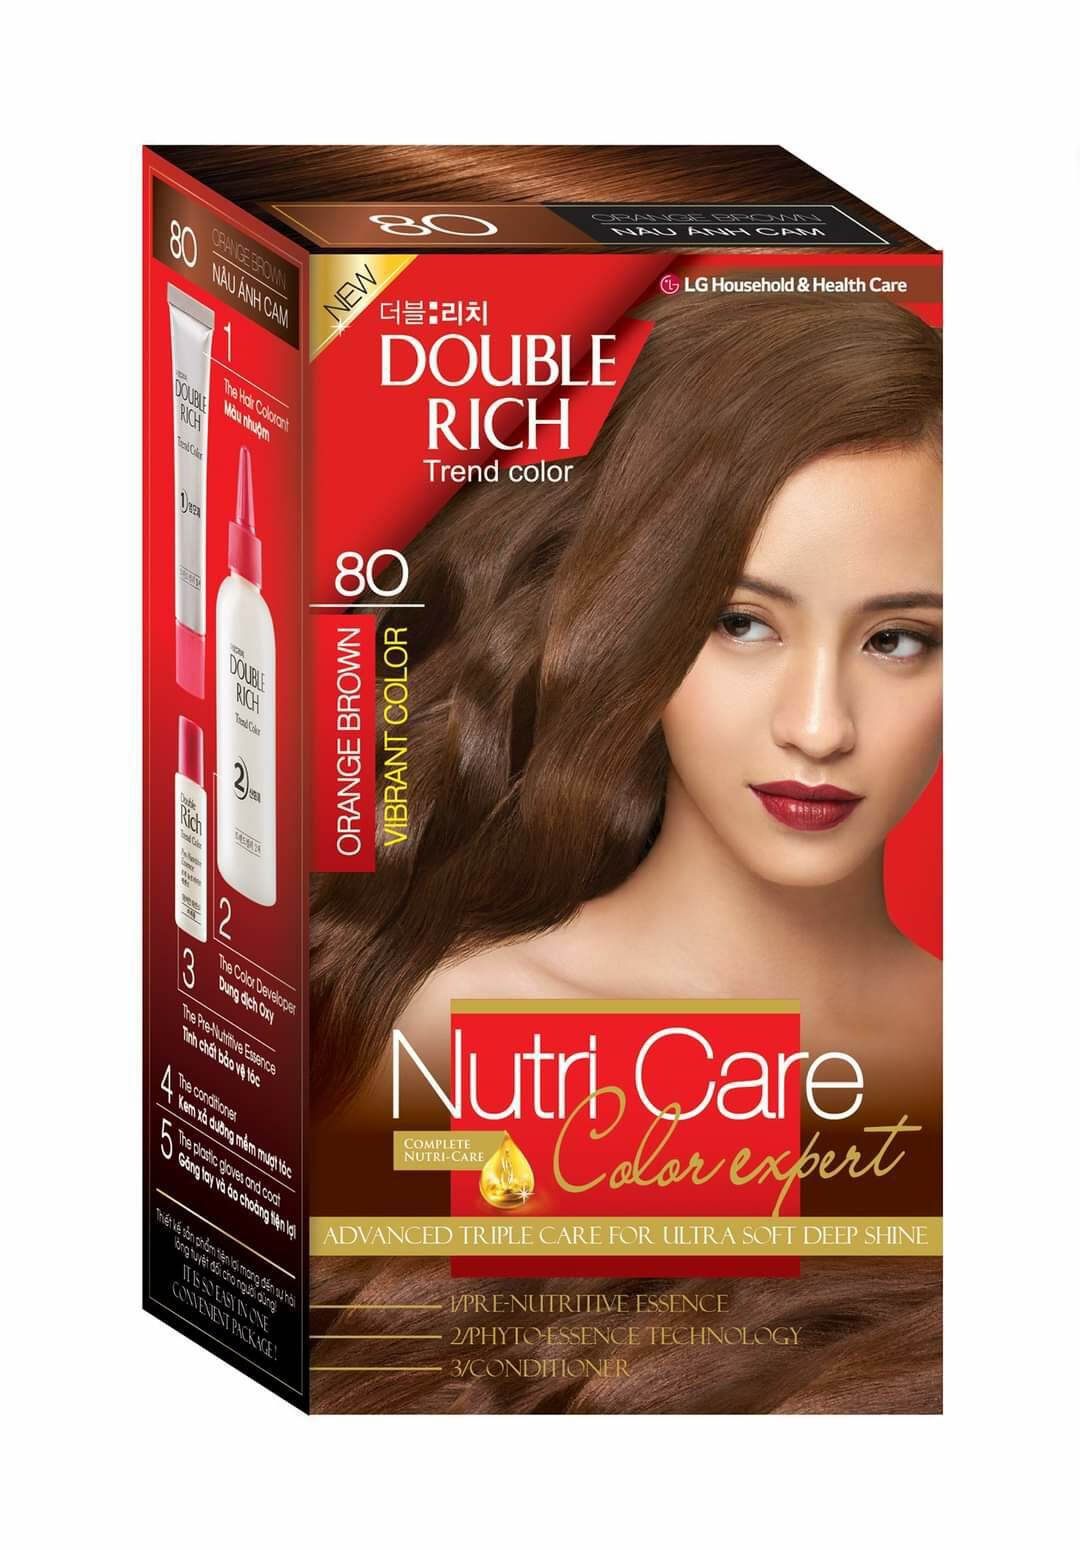 Bạn muốn có mái tóc đẹp mượt mà, rực rỡ và bóng bẩy? Double Rich - một thương hiệu nổi tiếng về thuốc nhuộm tóc Hàn Quốc sẽ giúp bạn thực hiện điều đó. Đừng ngại ngần, hãy khám phá hình ảnh thú vị về sản phẩm thuốc nhuộm tóc Double Rich - một sản phẩm mạnh mẽ, chắc chắn và với chất lượng cao cấp.